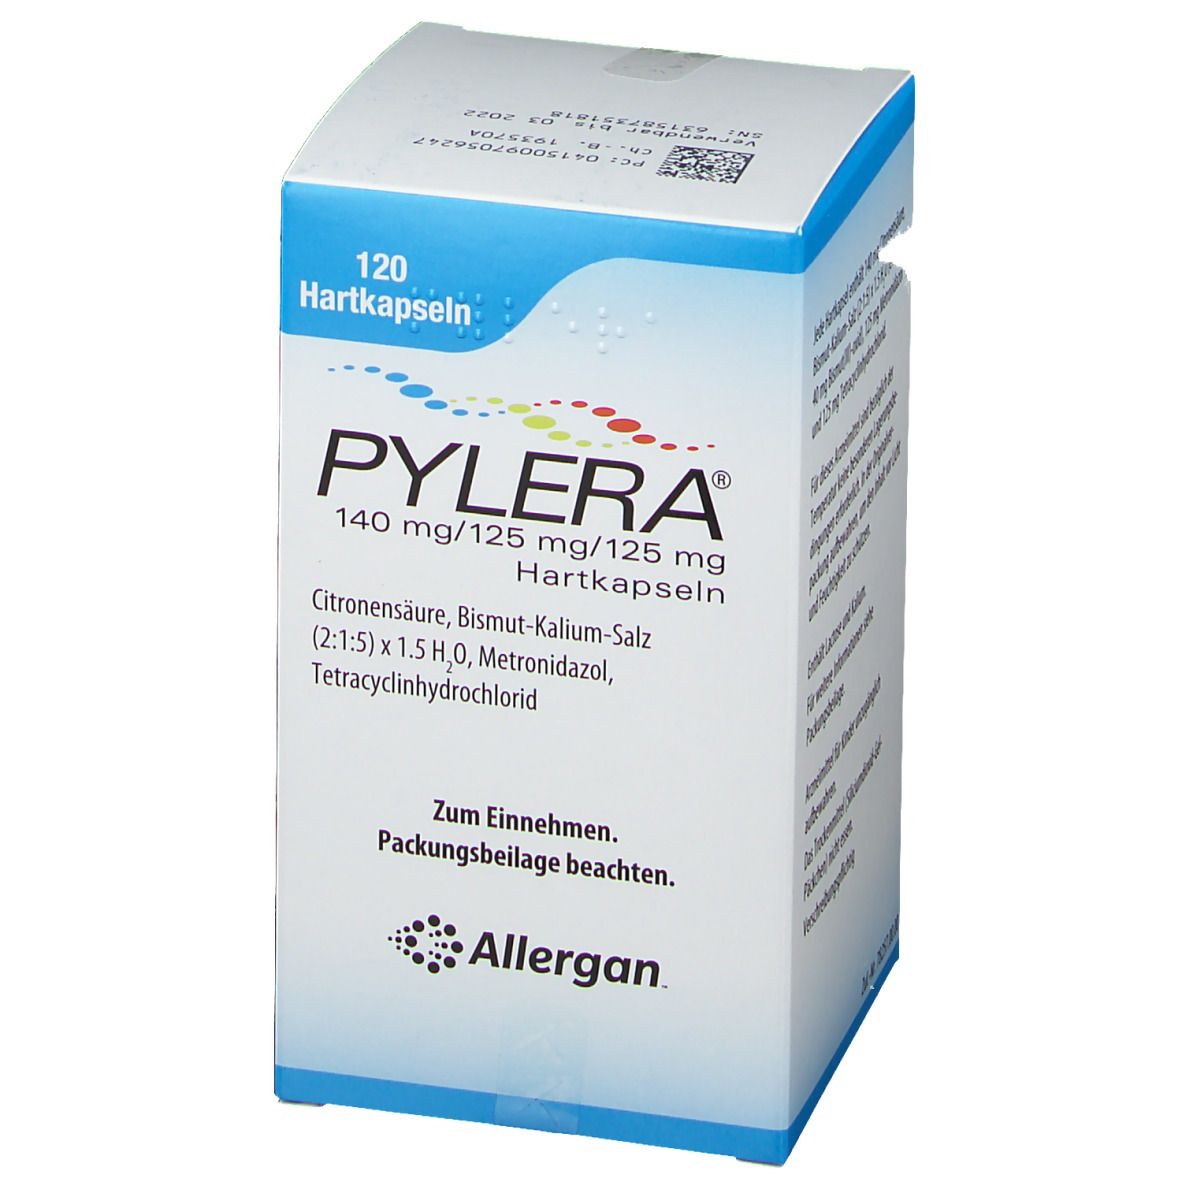 PYLERA® 140 mg/125 mg/125 mg